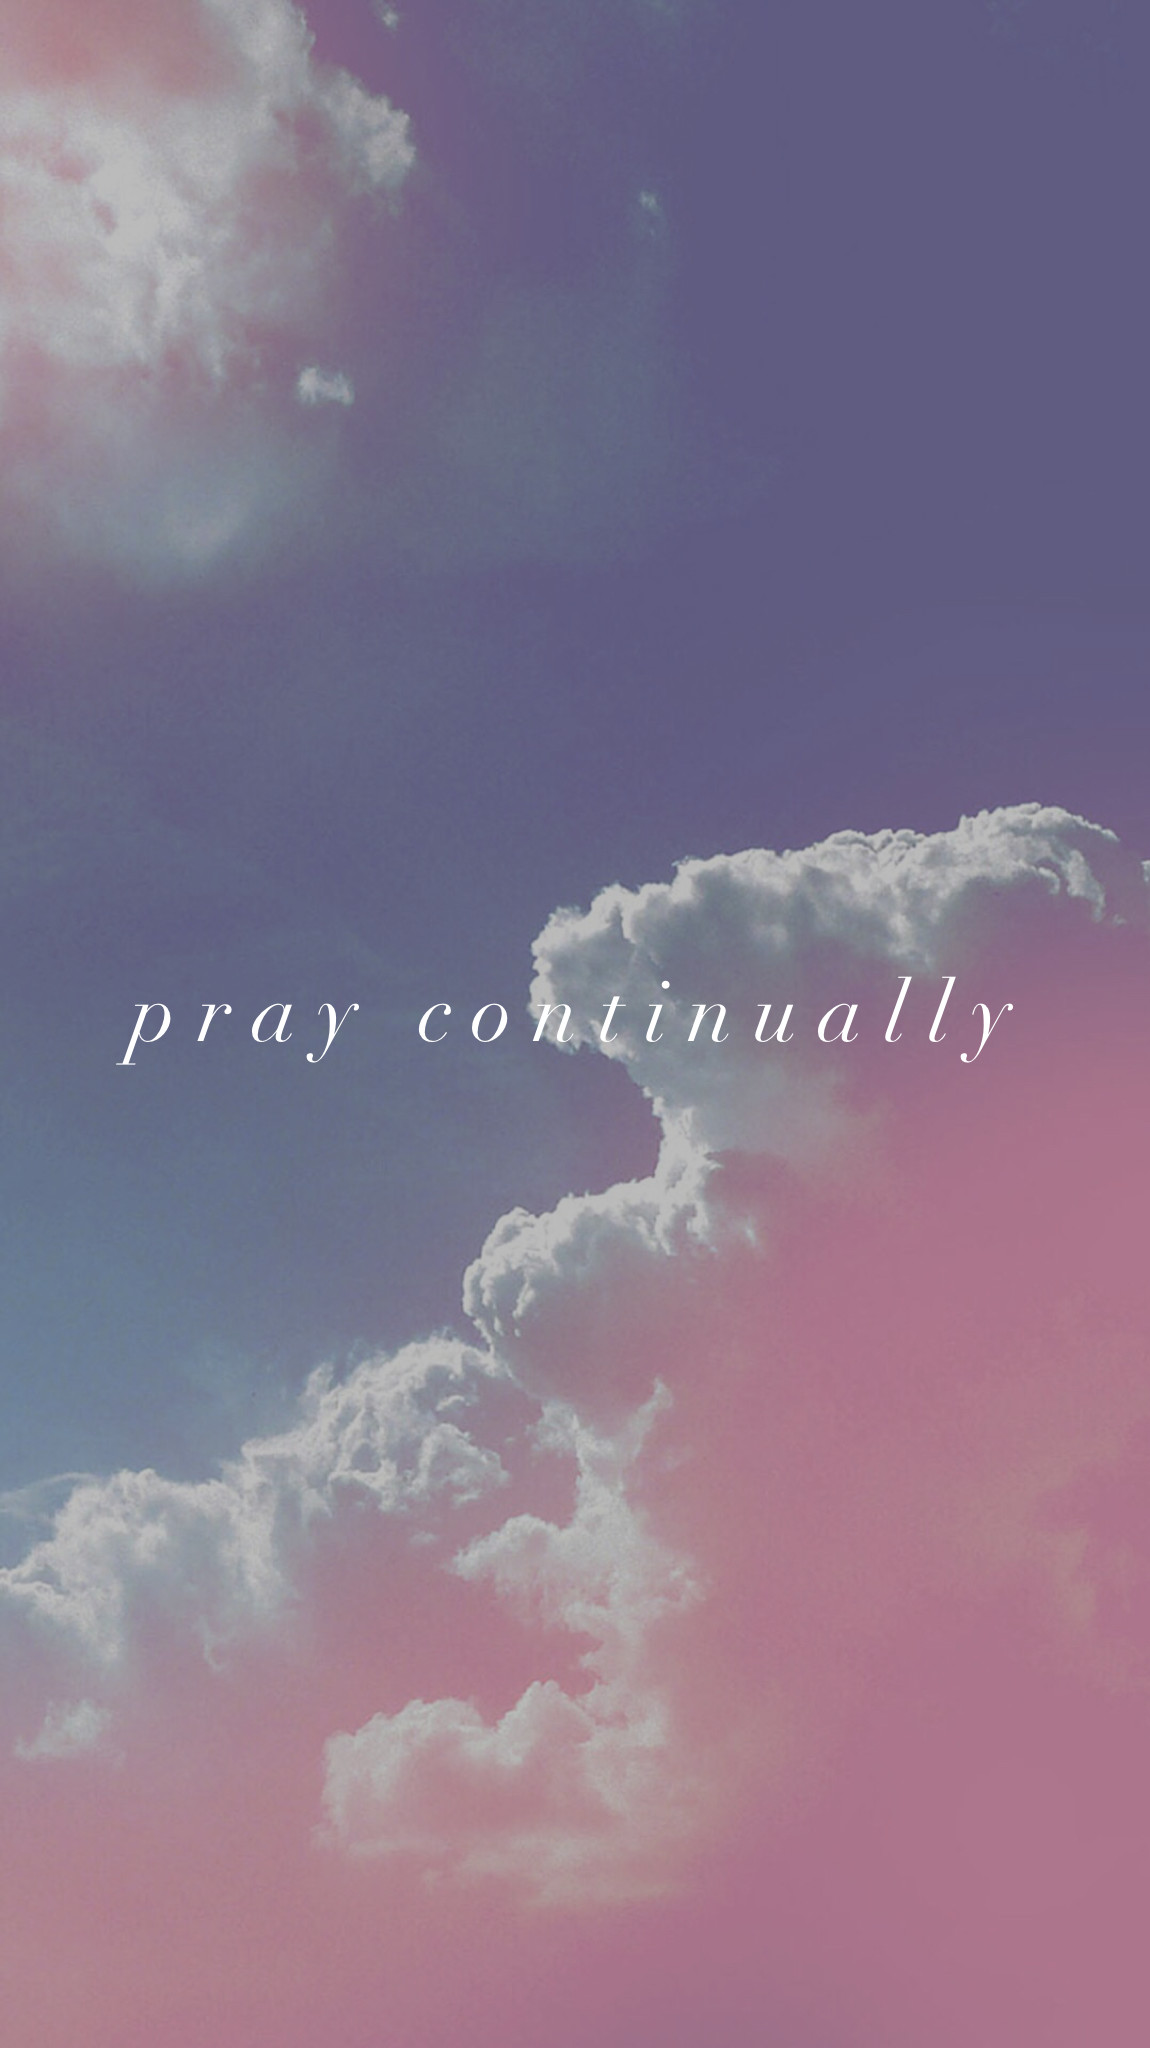 1150x2048 Pray continually.